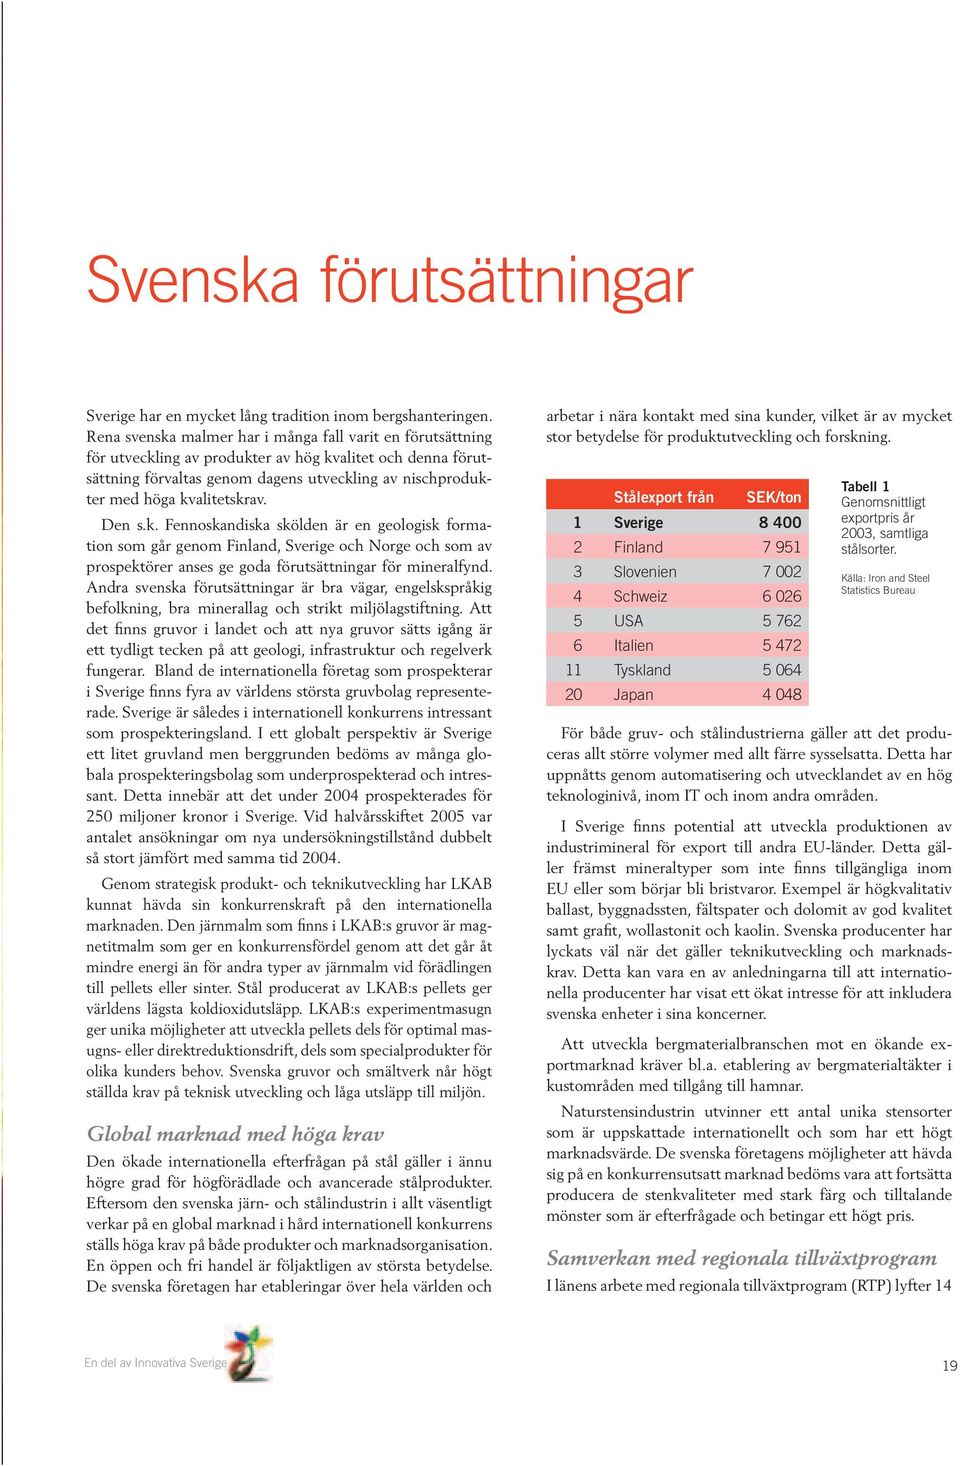 kvalitetskrav. Den s.k. Fennoskandiska skölden är en geologisk formation som går genom Finland, Sverige och Norge och som av prospektörer anses ge goda förutsättningar för mineralfynd.